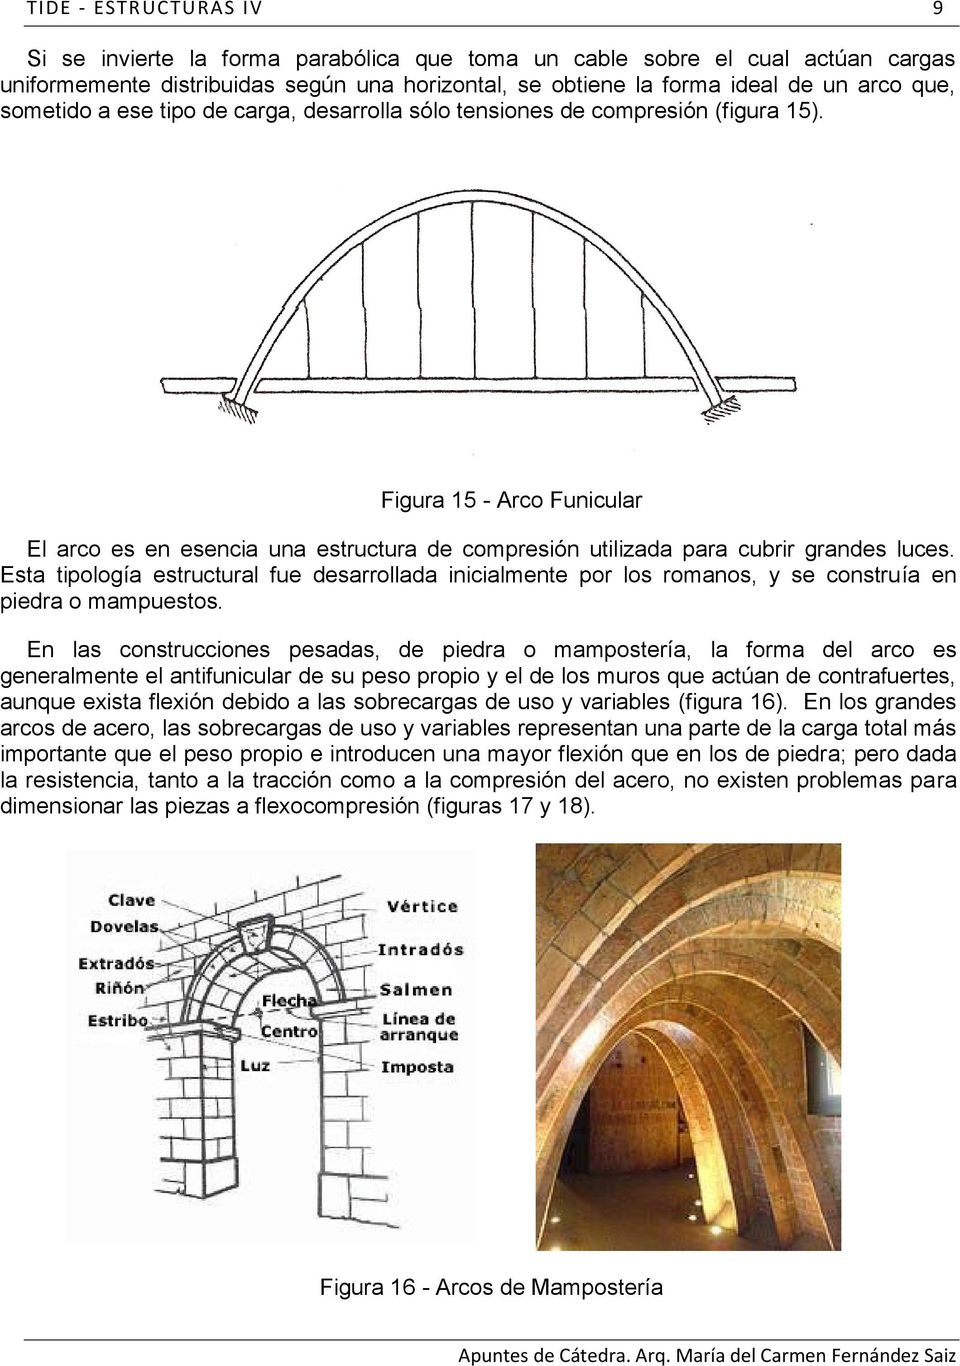 Esta tipología estructural fue desarrollada inicialmente por los romanos, y se construía en piedra o mampuestos.